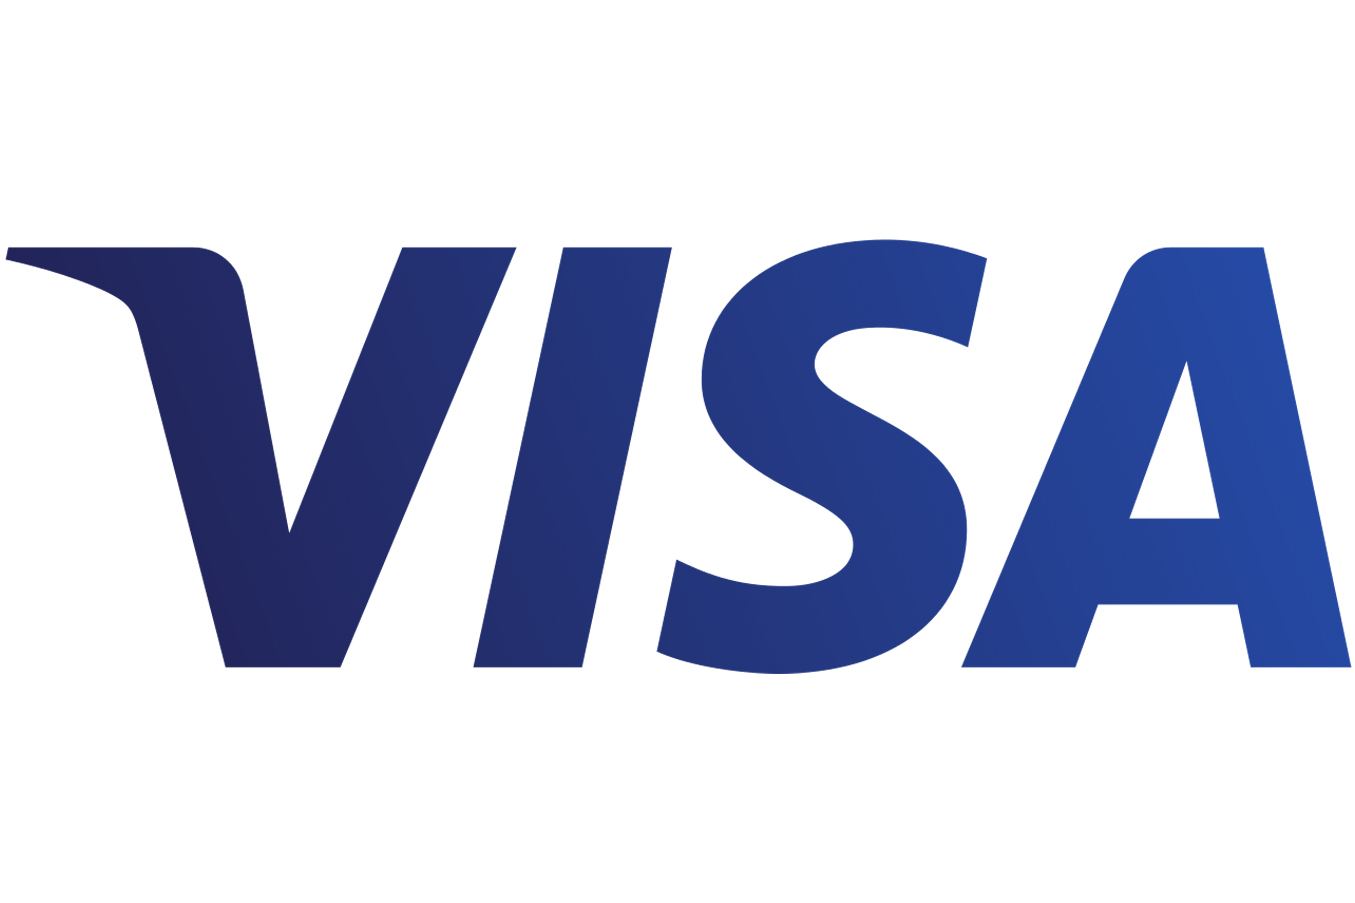 Visa готова делиться экспертизой в области цифровых валют с Центробанком Азербайджана